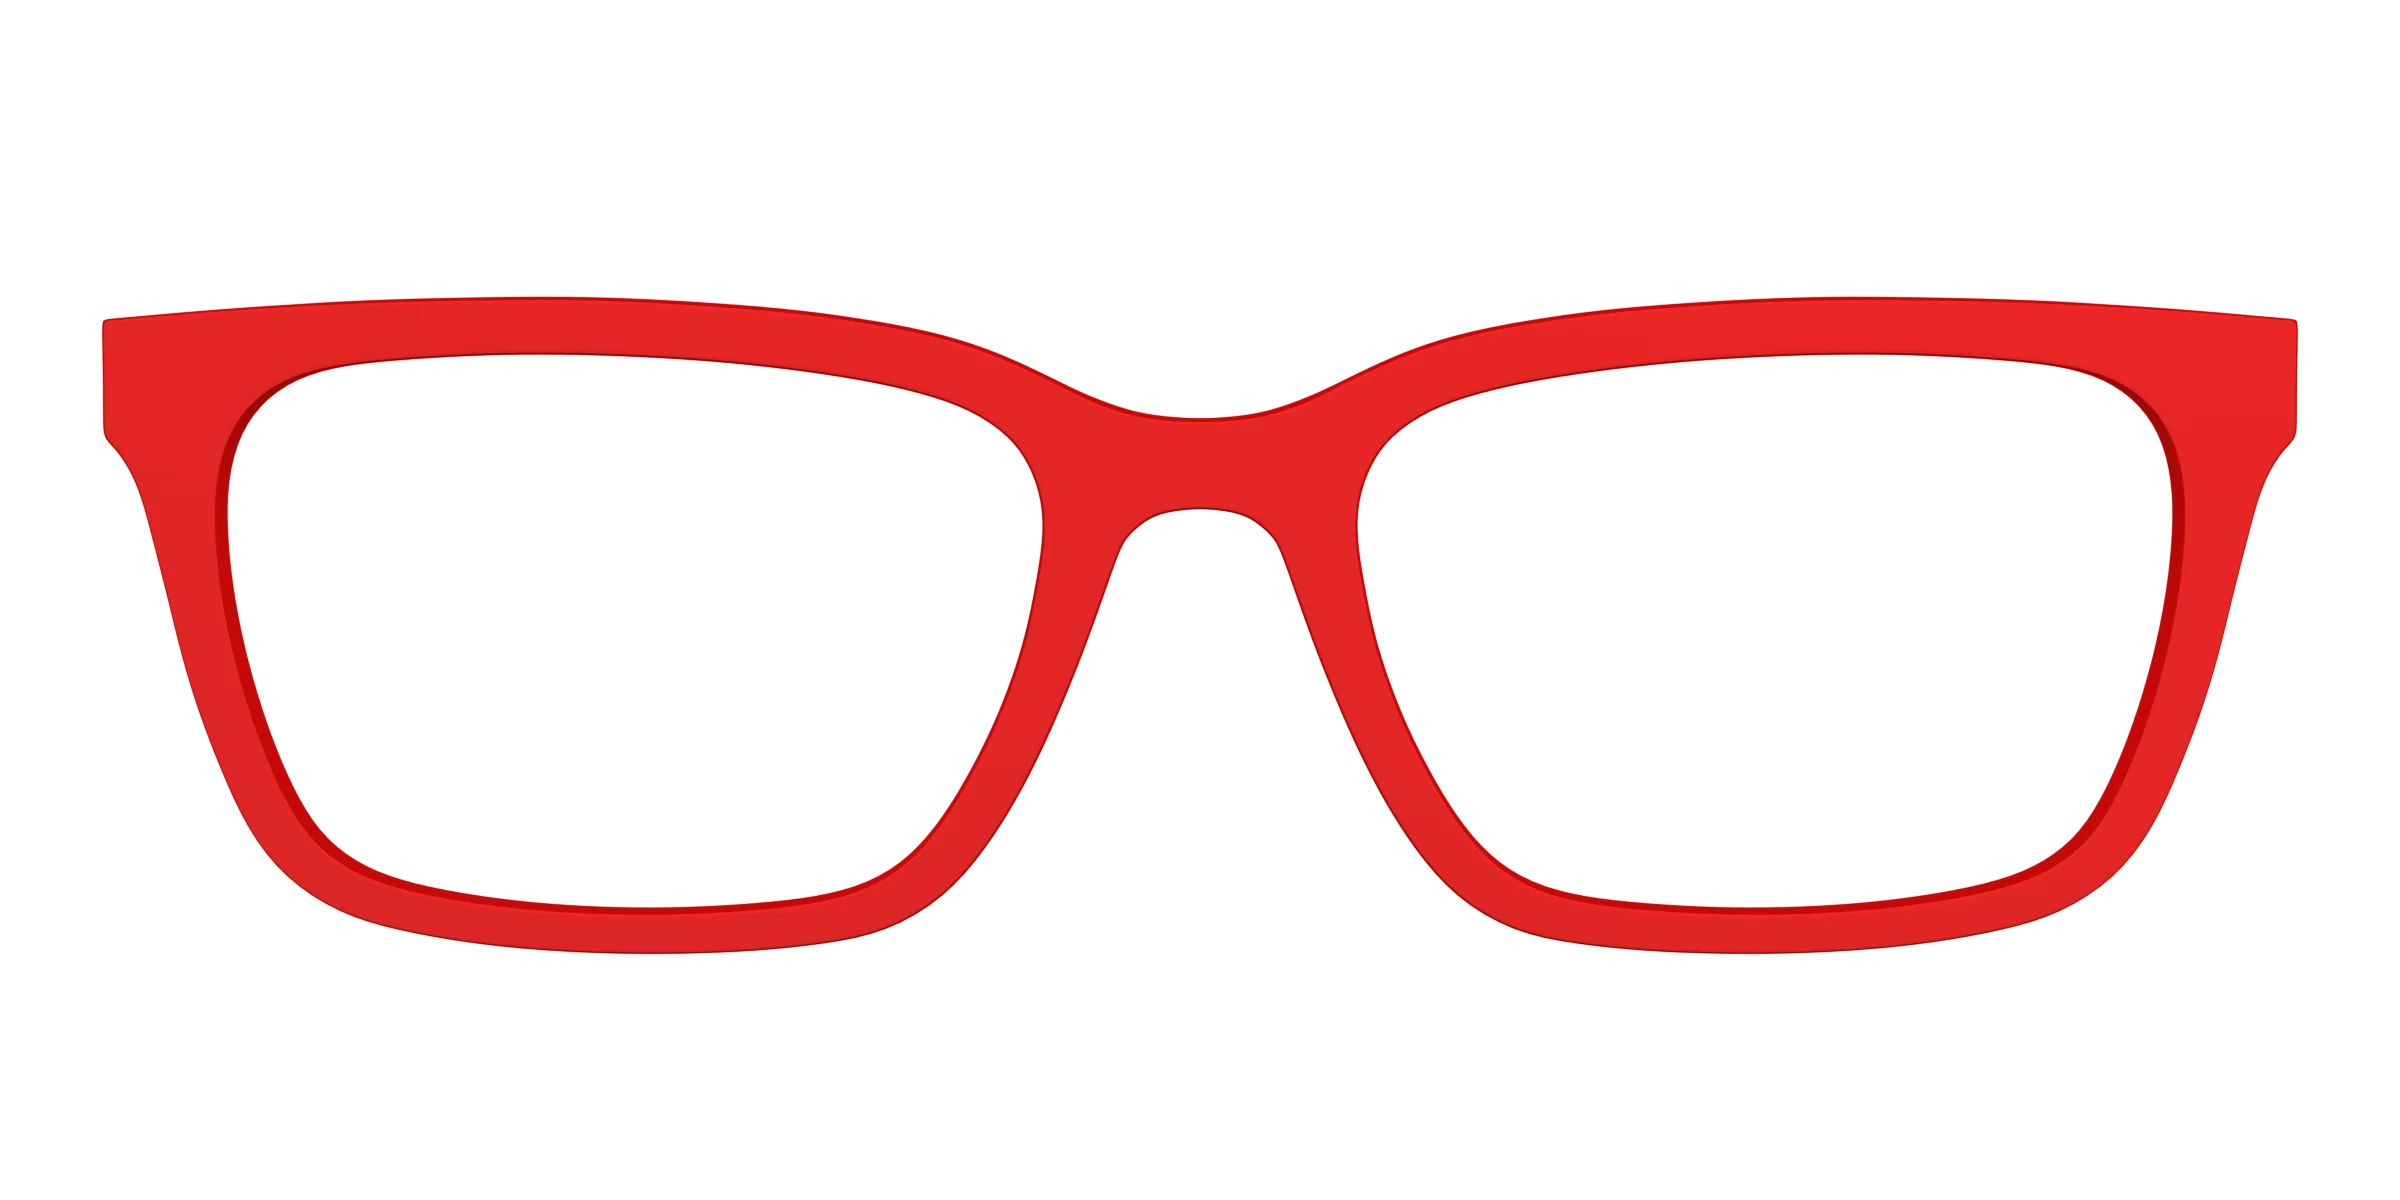 The Red | Pair Eyewear